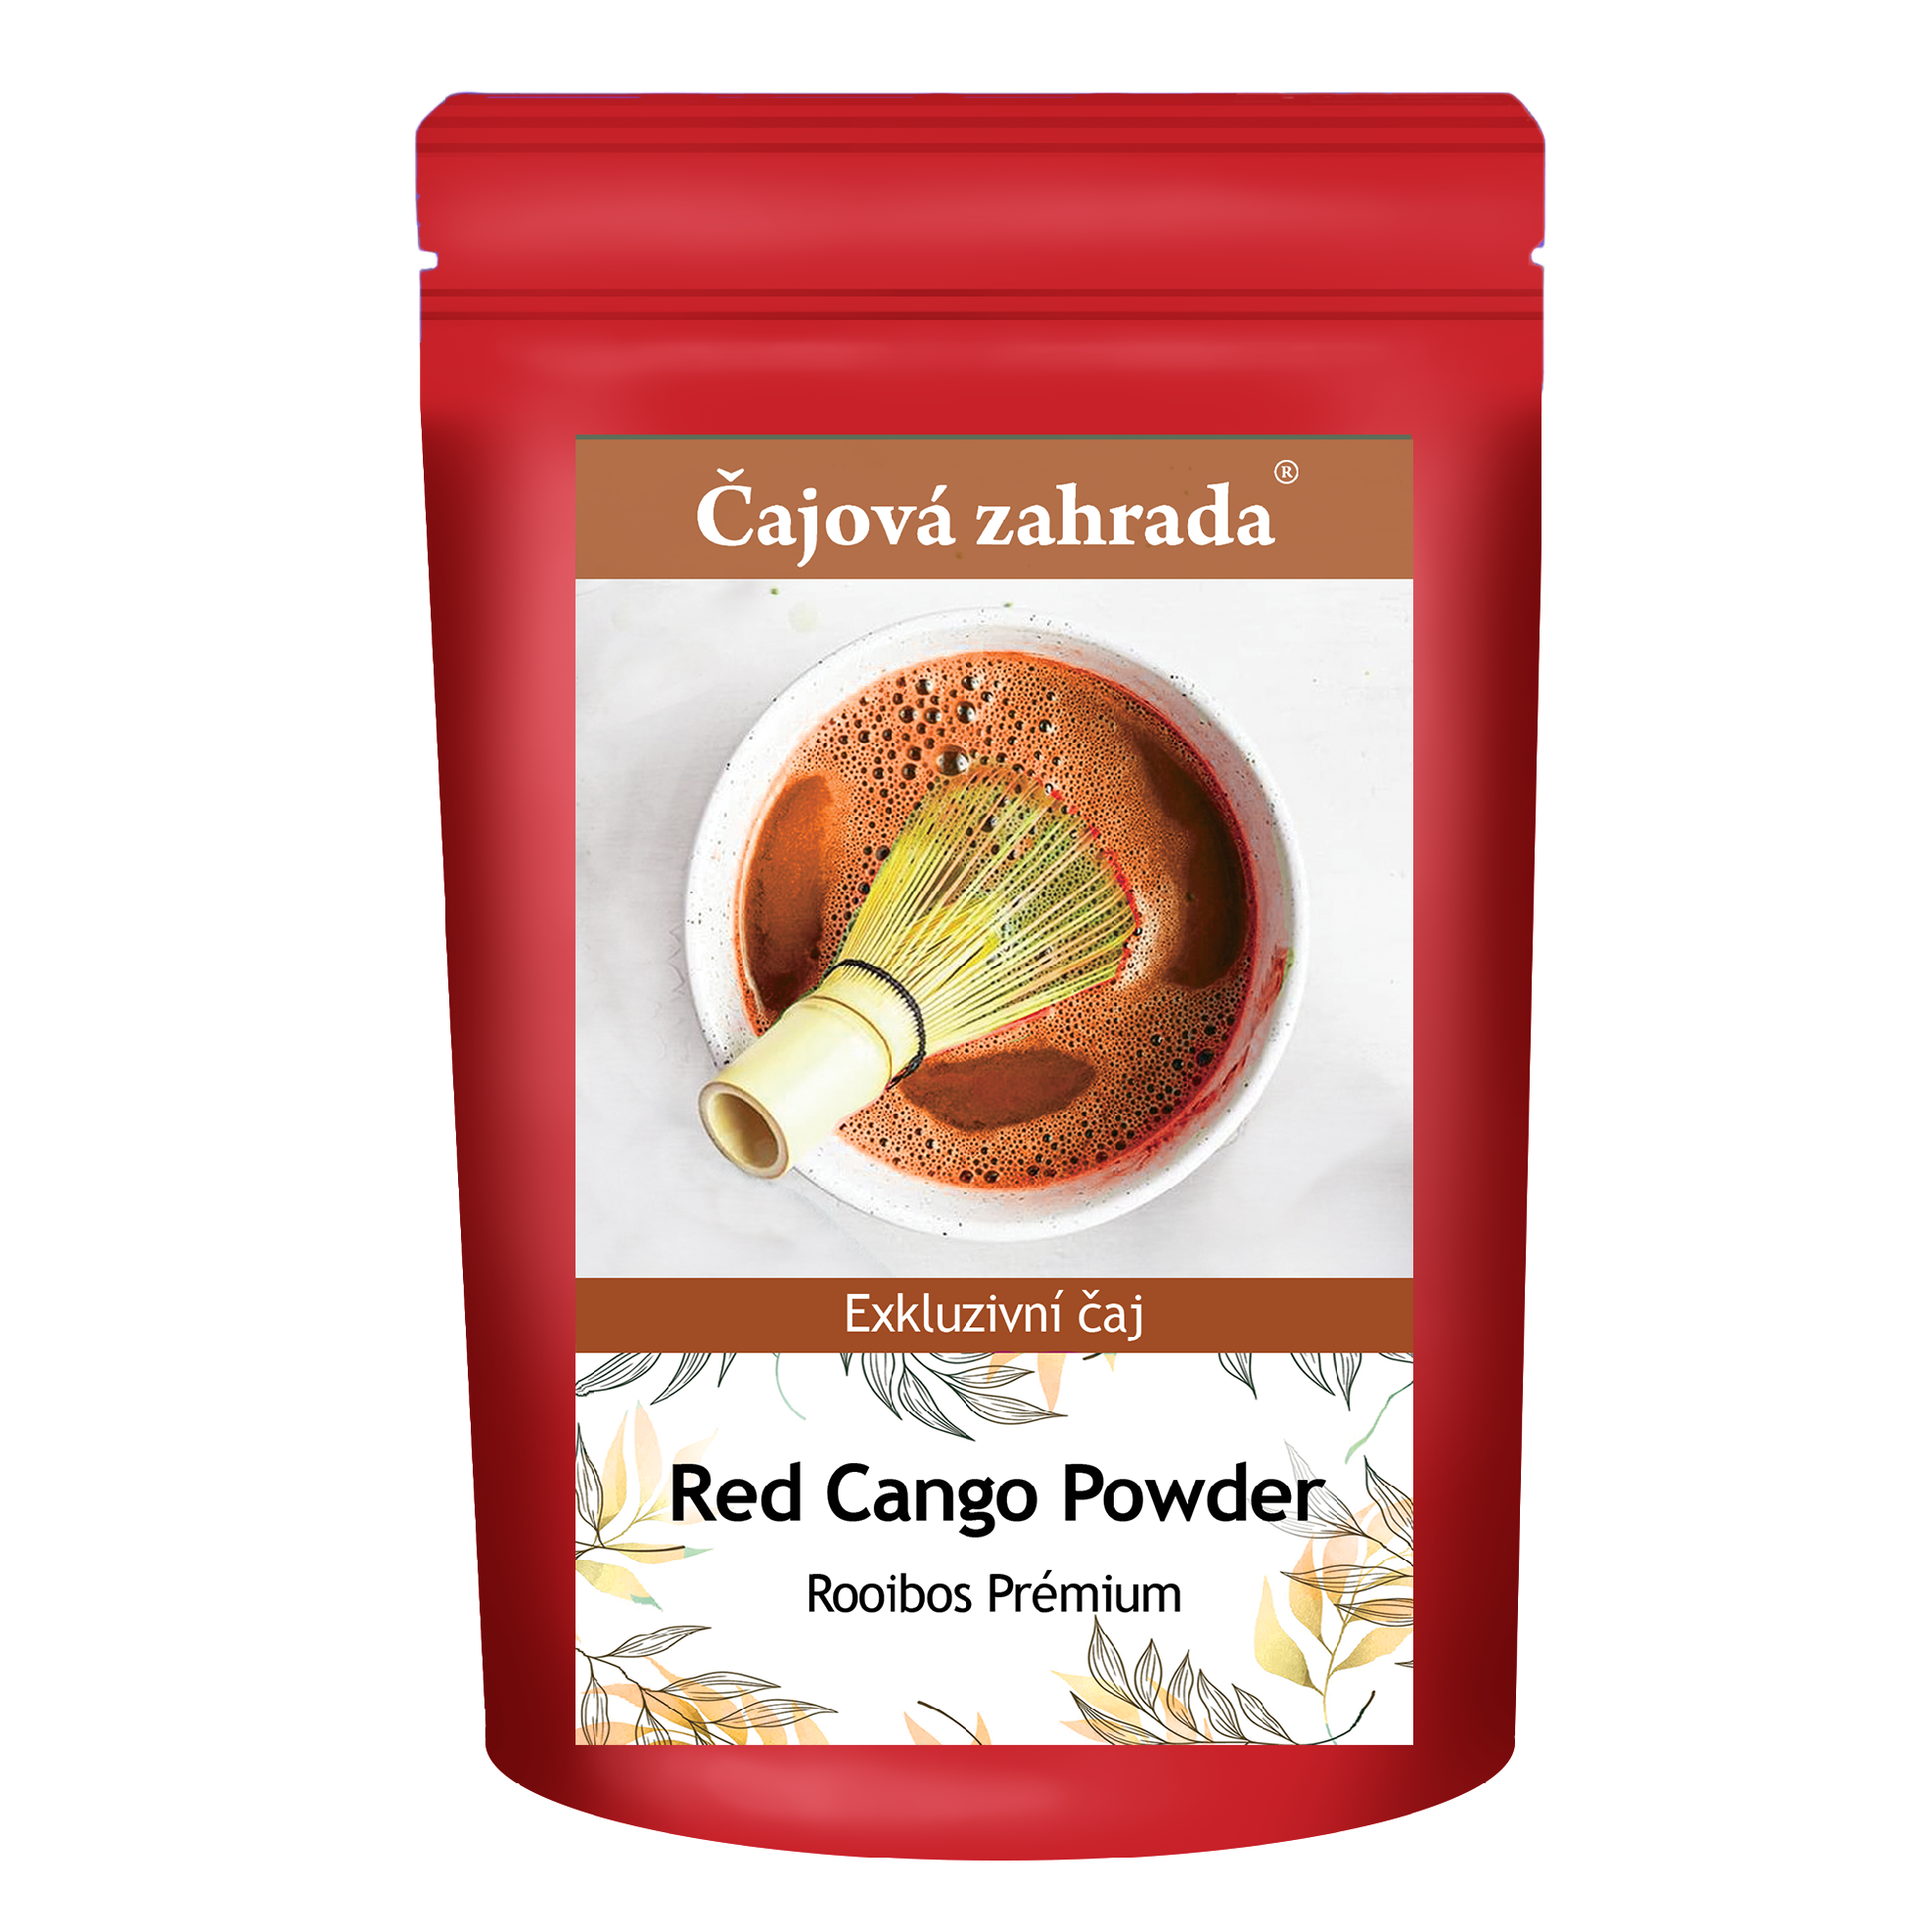 Čajová zahrada Red Cango Powder - Rooibos Prémium 100g